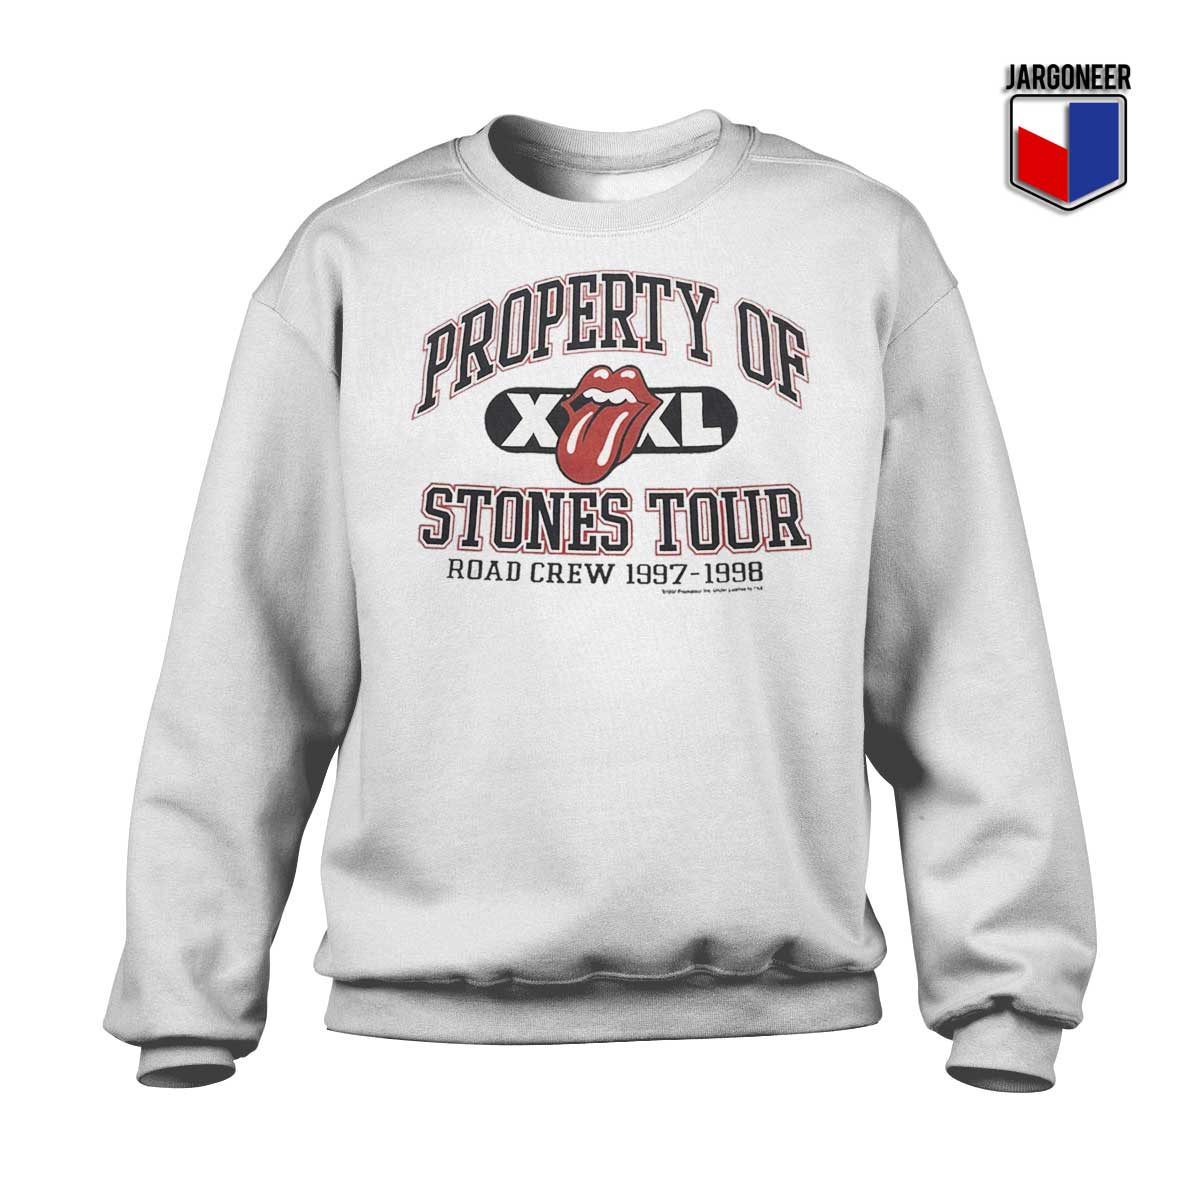 Property of Rolling Stones Tour Sweatshirt - Shop Unique Graphic Cool Shirt Designs